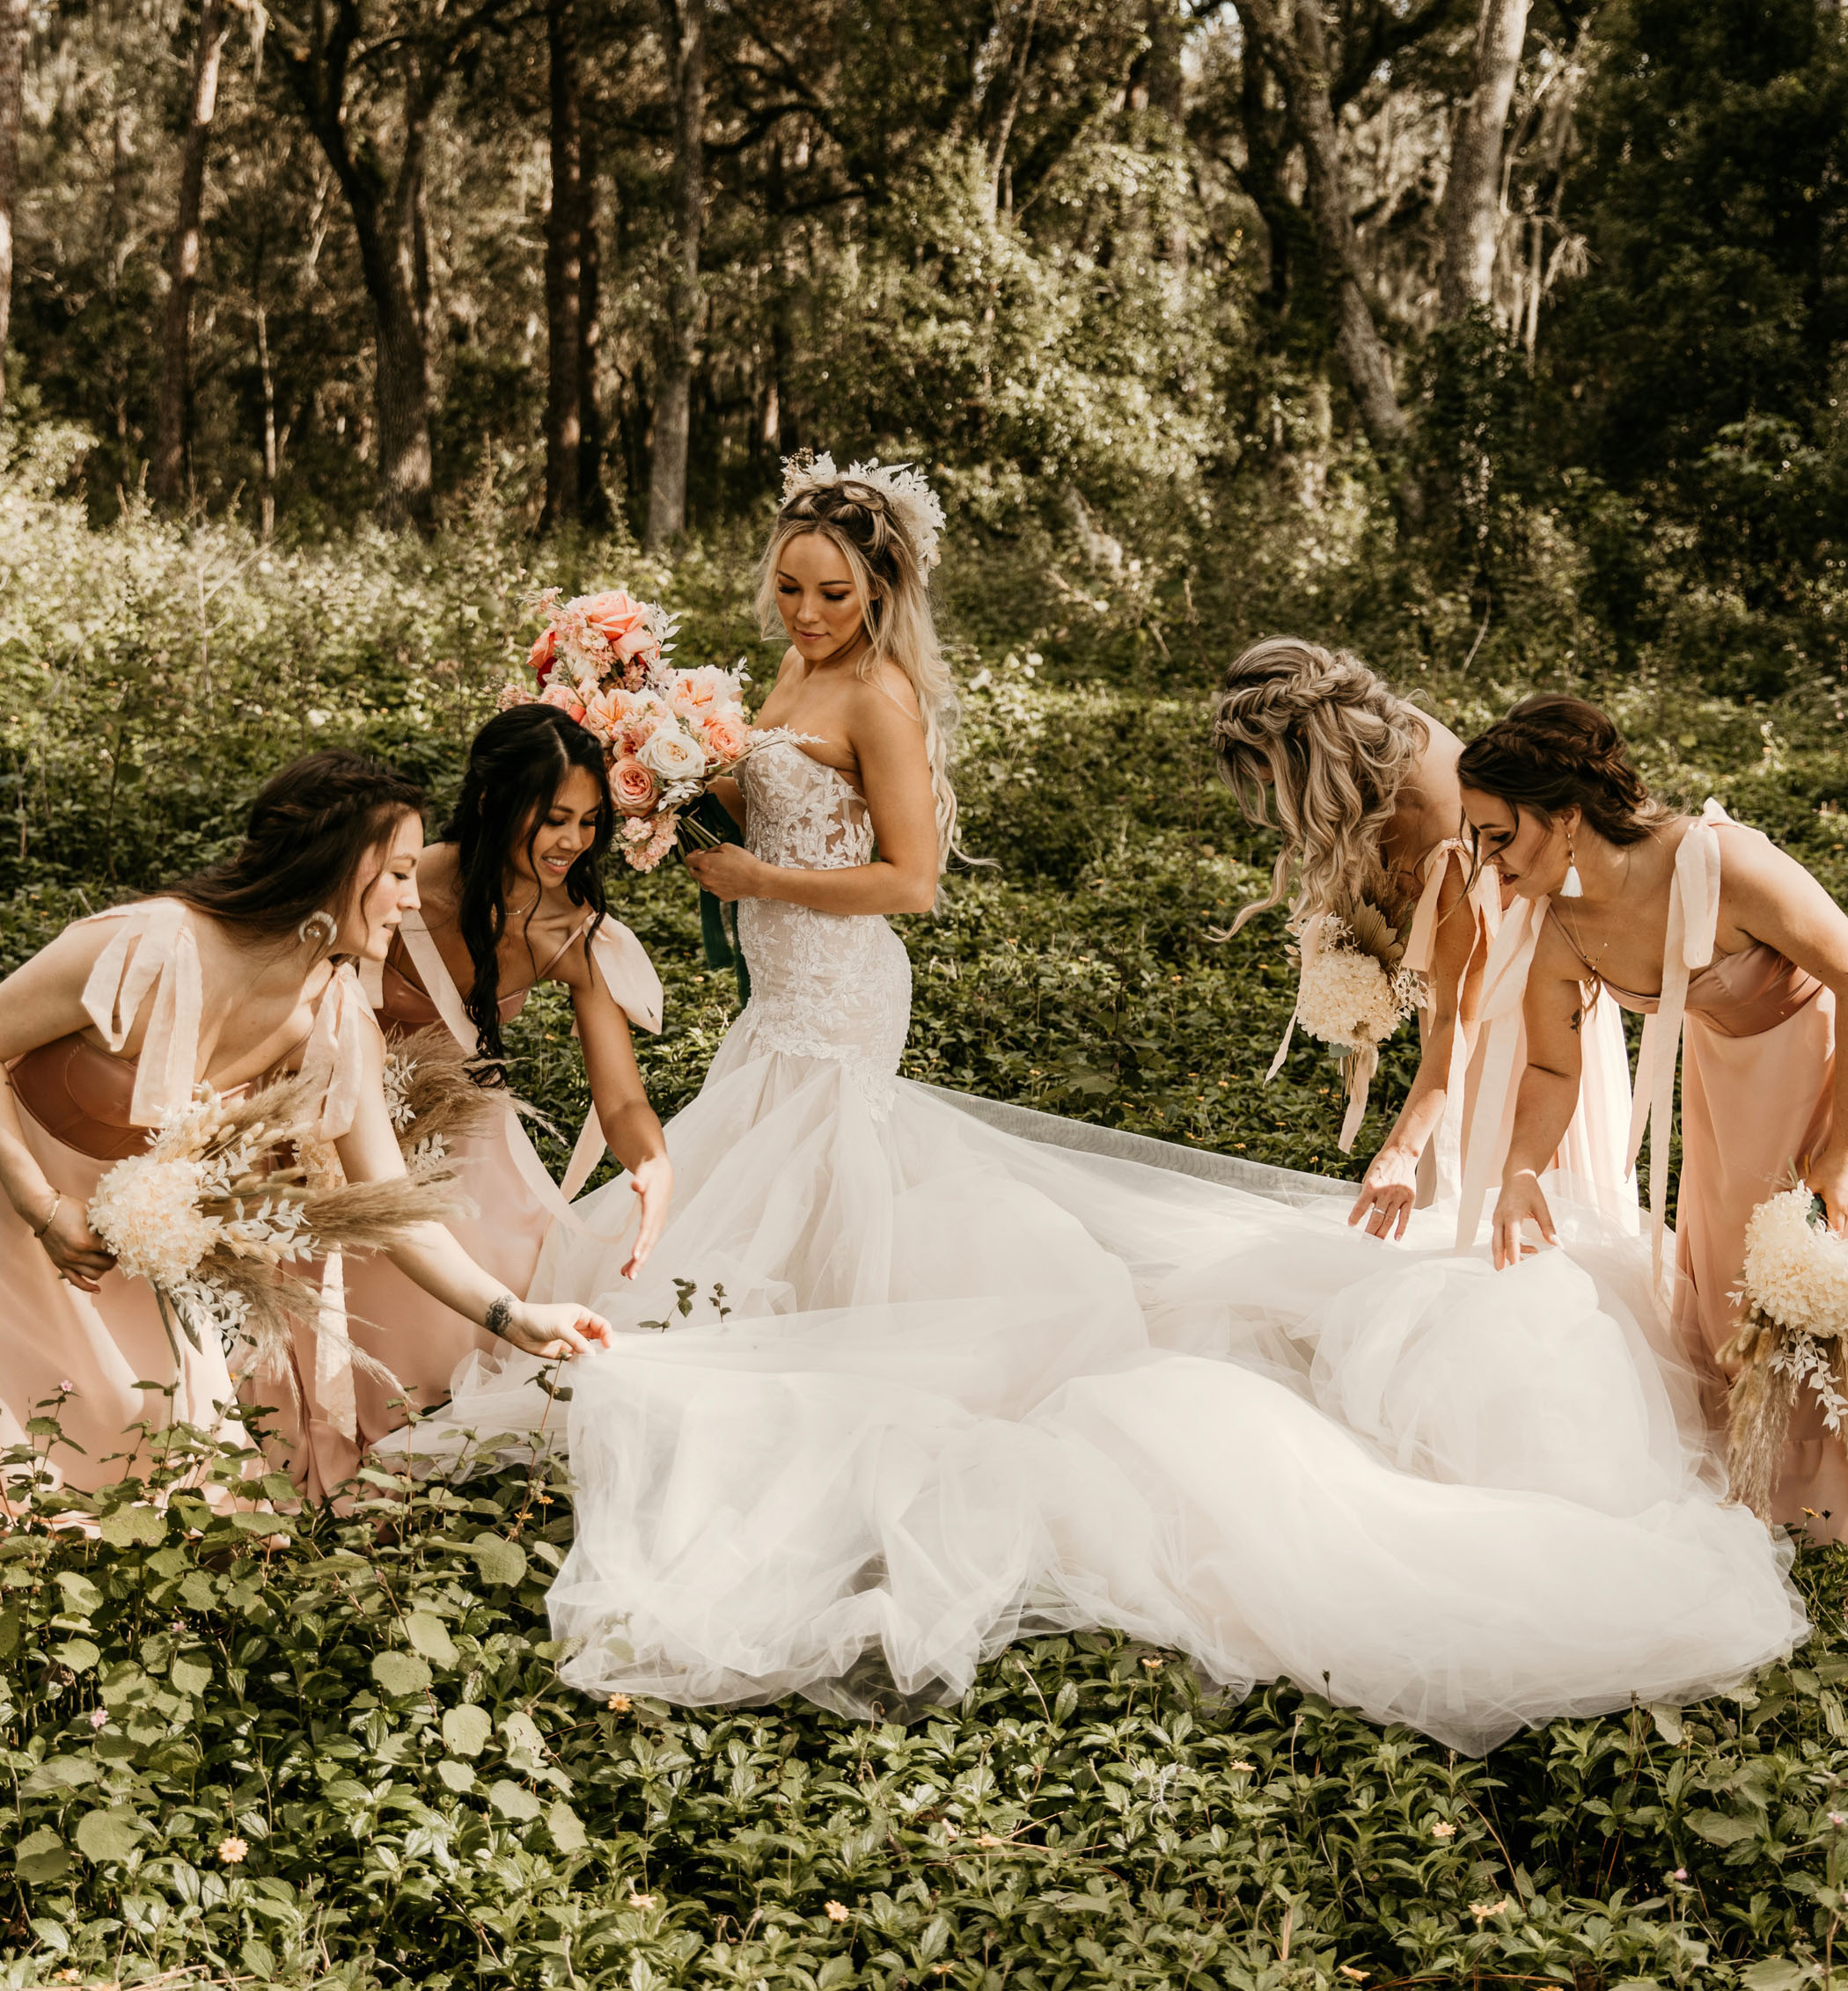 Pergola Microwedding and Salt Flats Bridals Bridesmaids